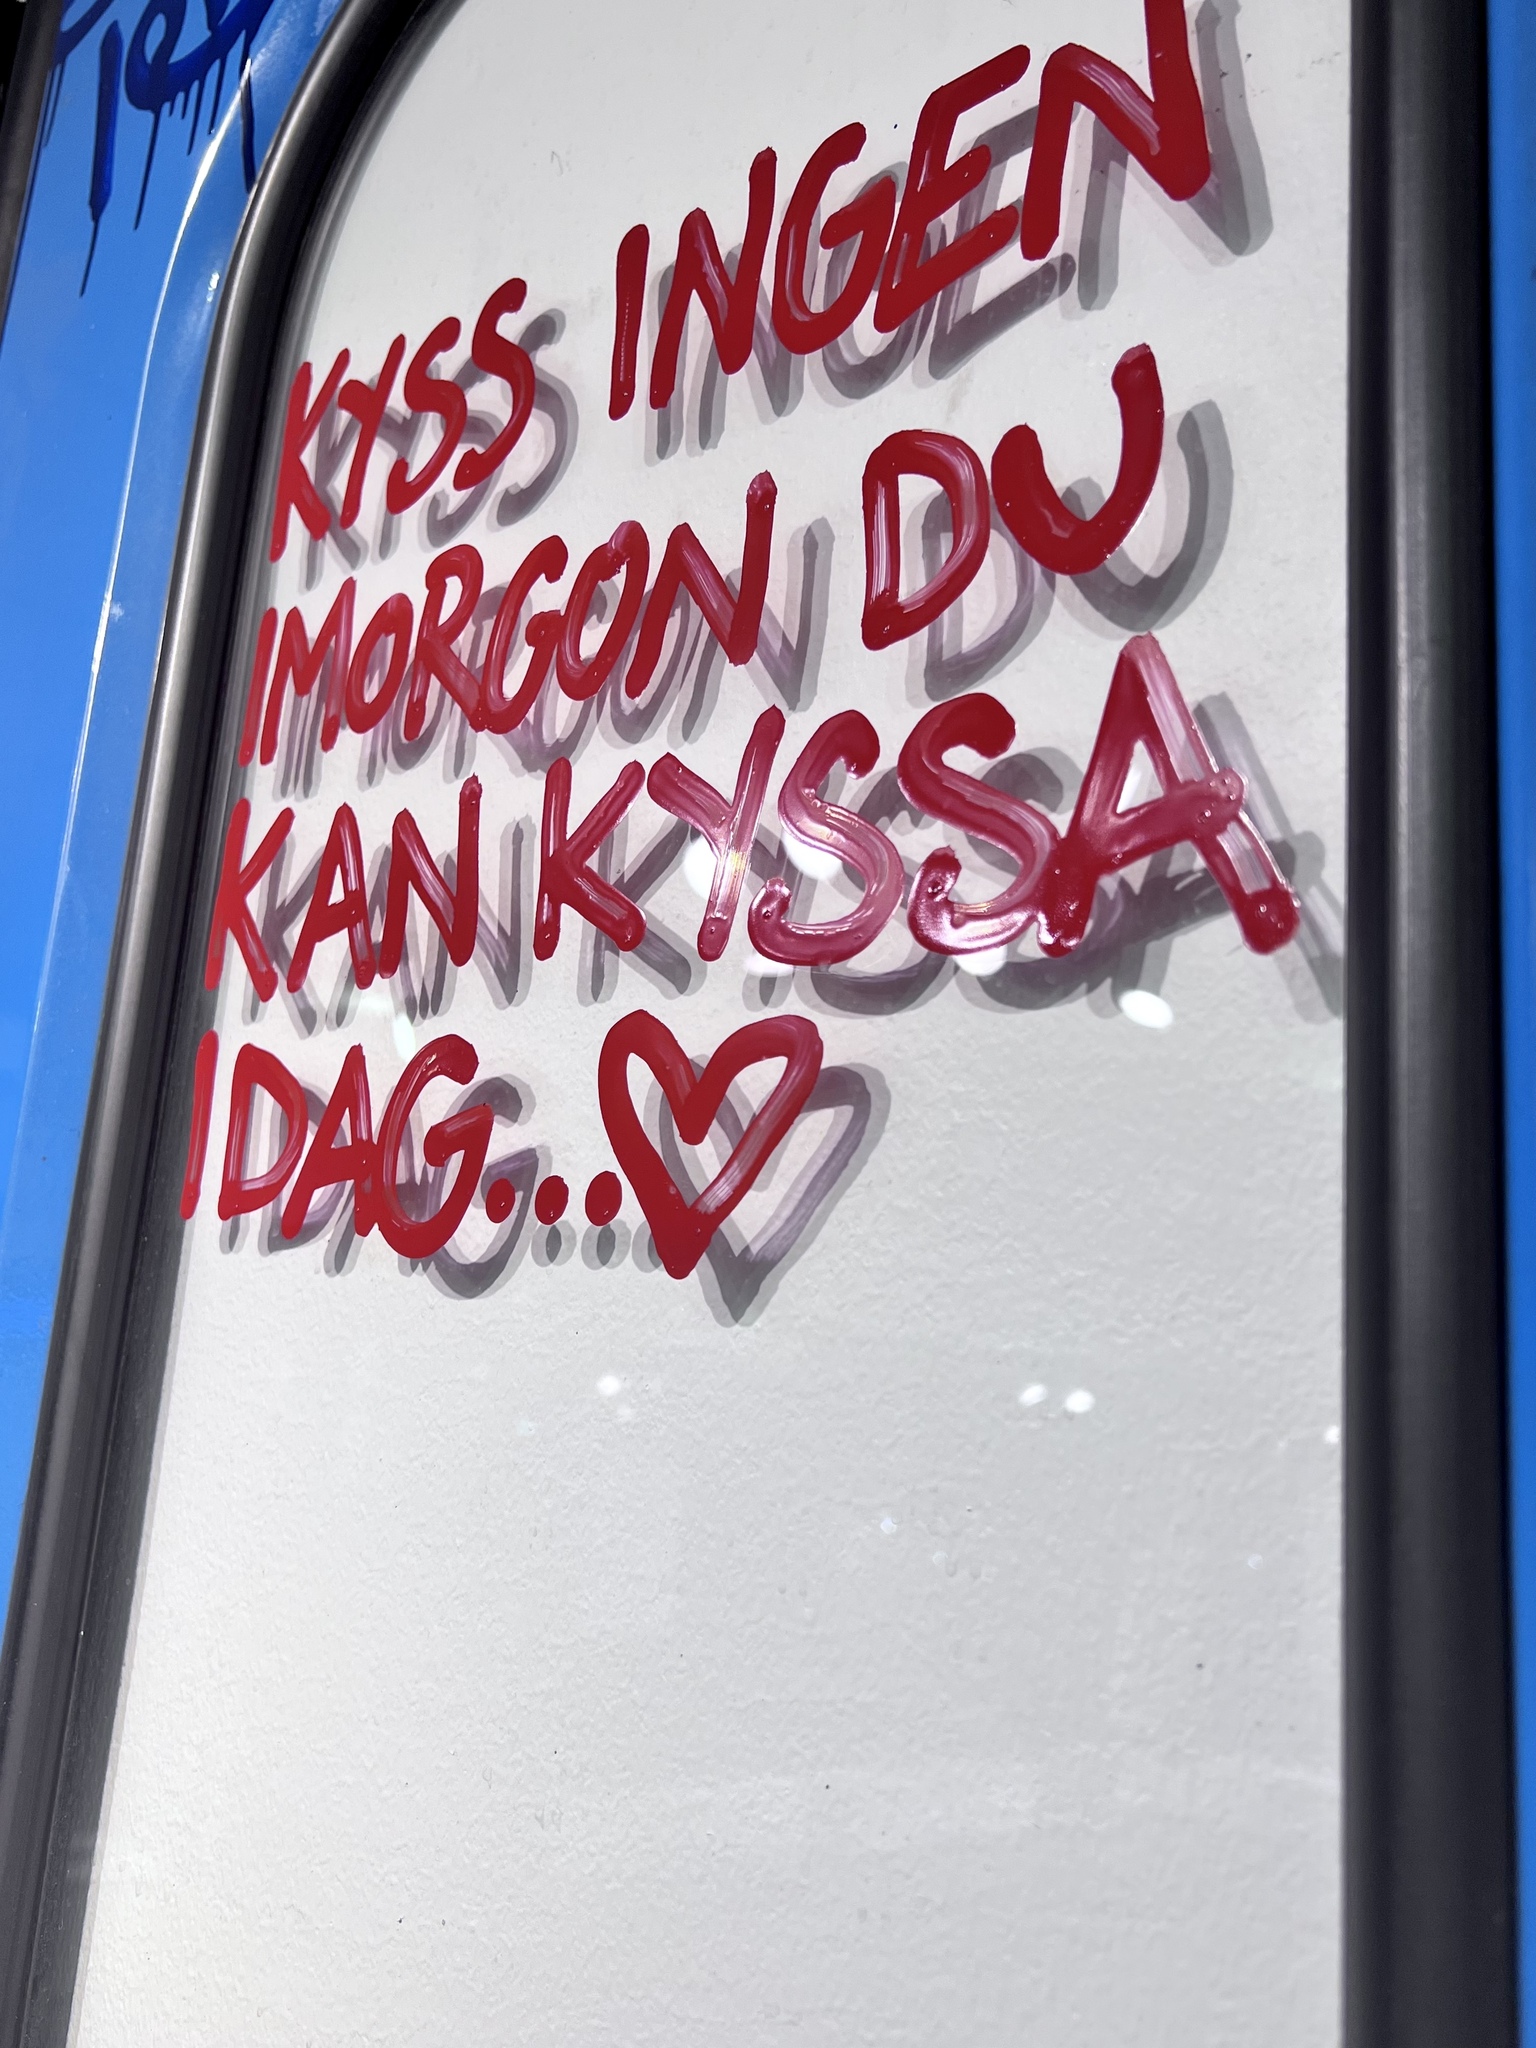 19. "Kyss ingen imorgon du kan kyssa idag” av Hellstrom Street Art, Feg & Idot från FY Crew 120x200 cm